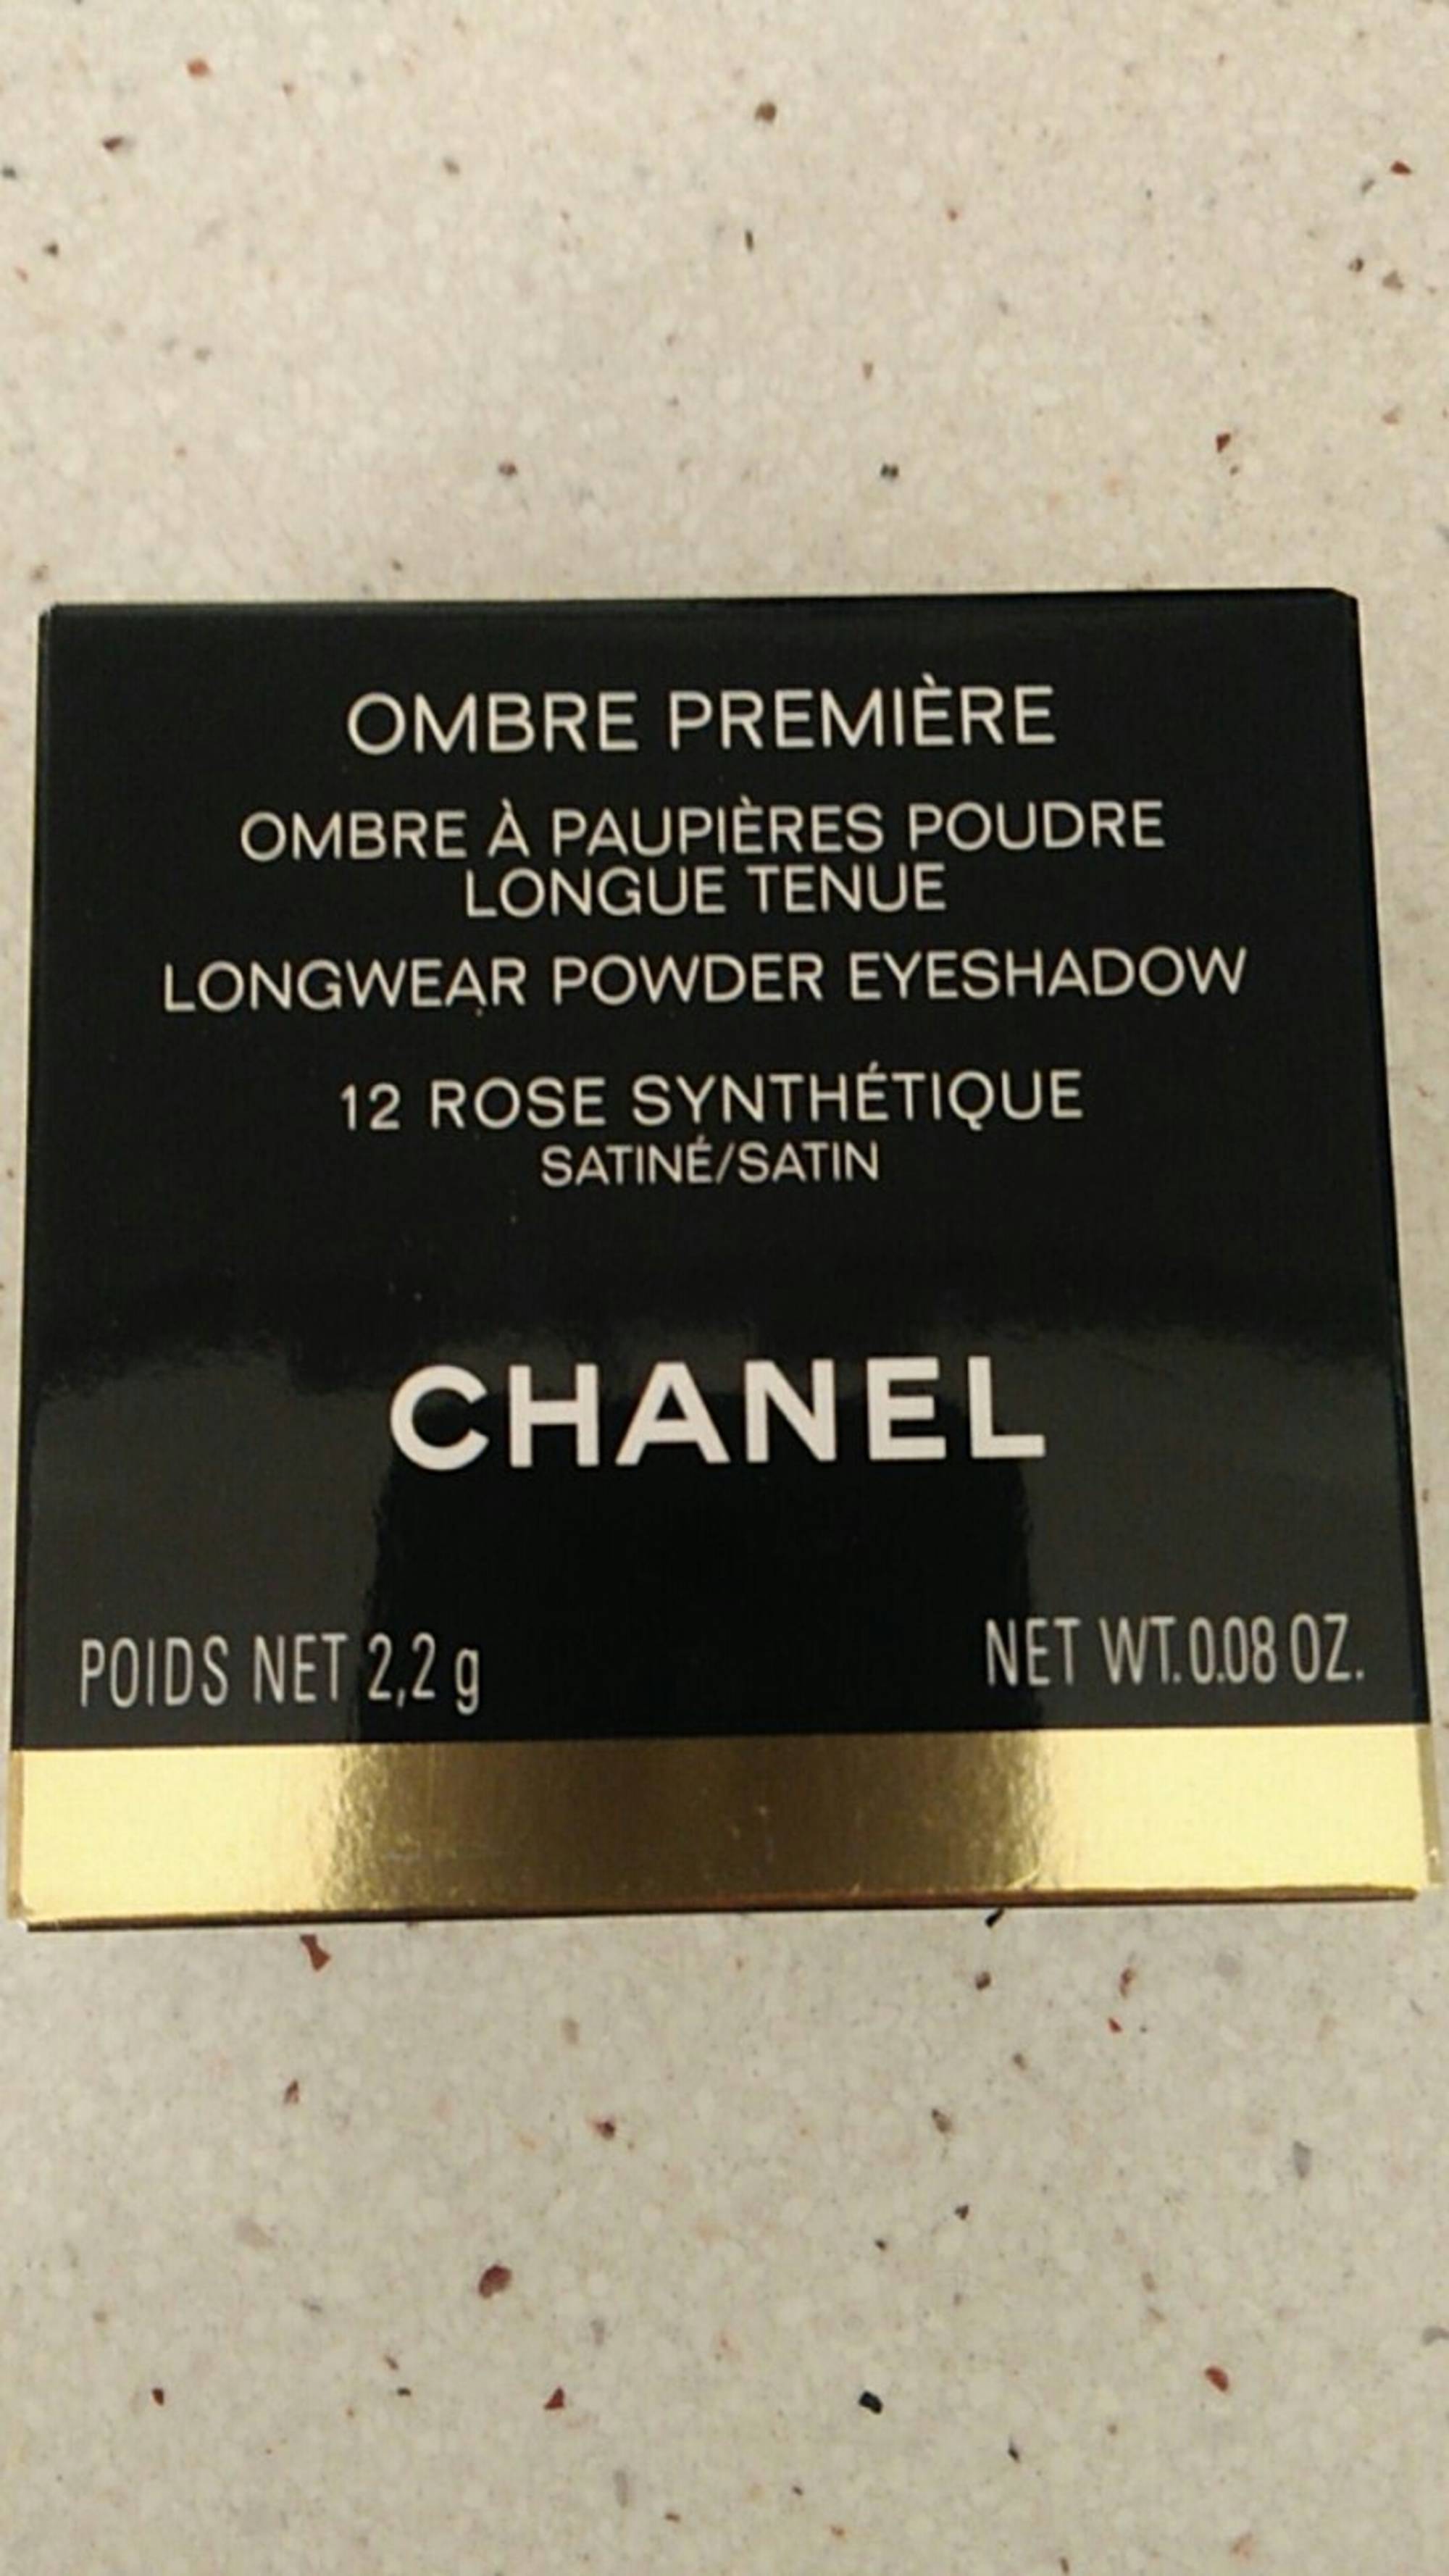 CHANEL - Ombre première - Ombre à paupières poudre 12 Rose synthétique satiné